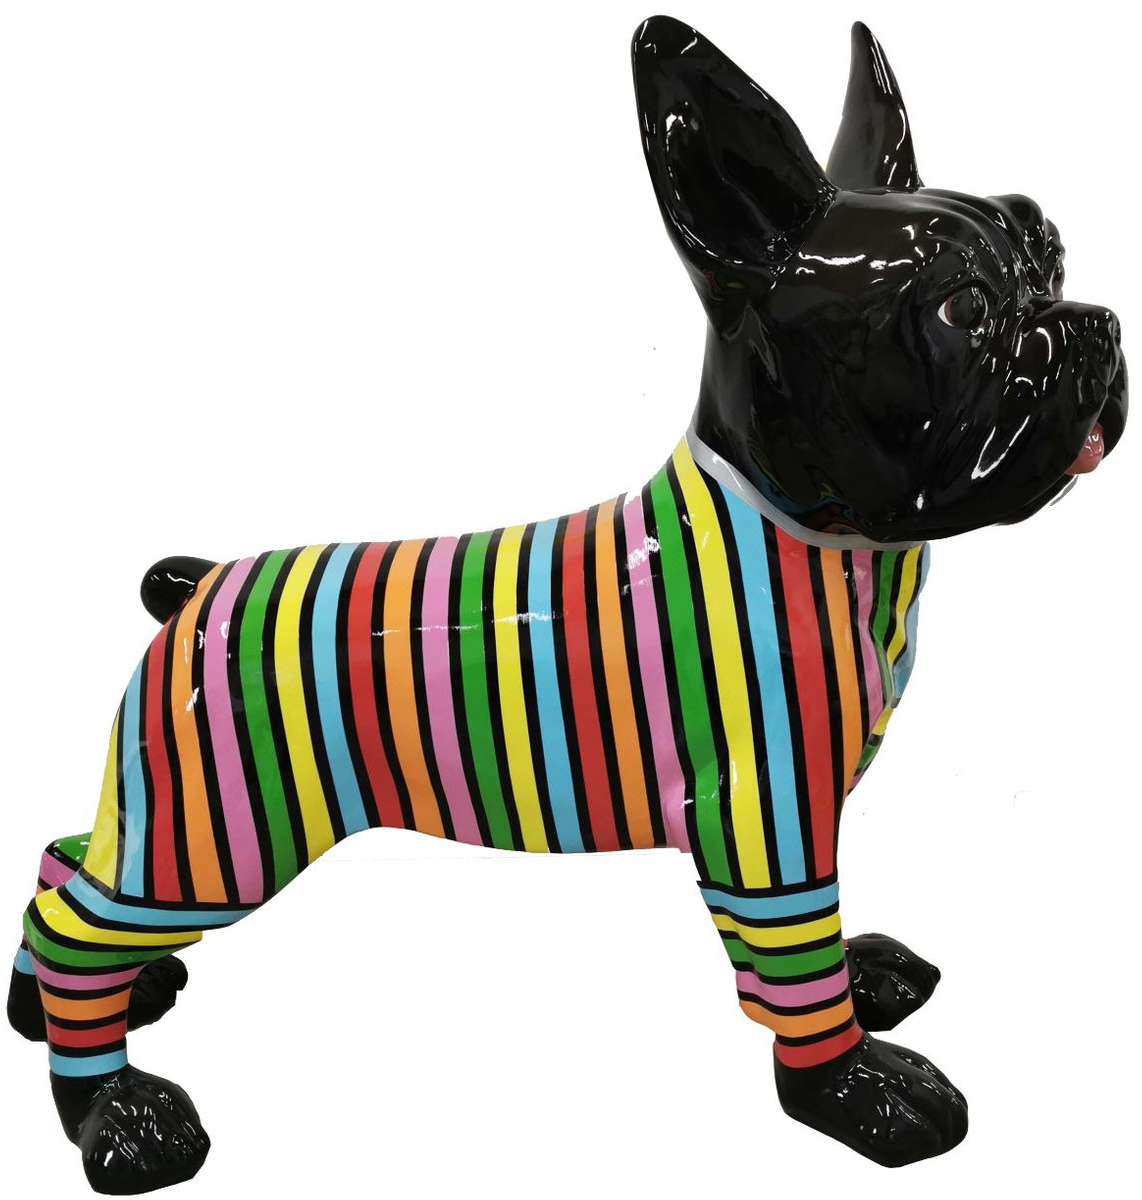 Französische Bulldogge Hund schwarz mit Streifen